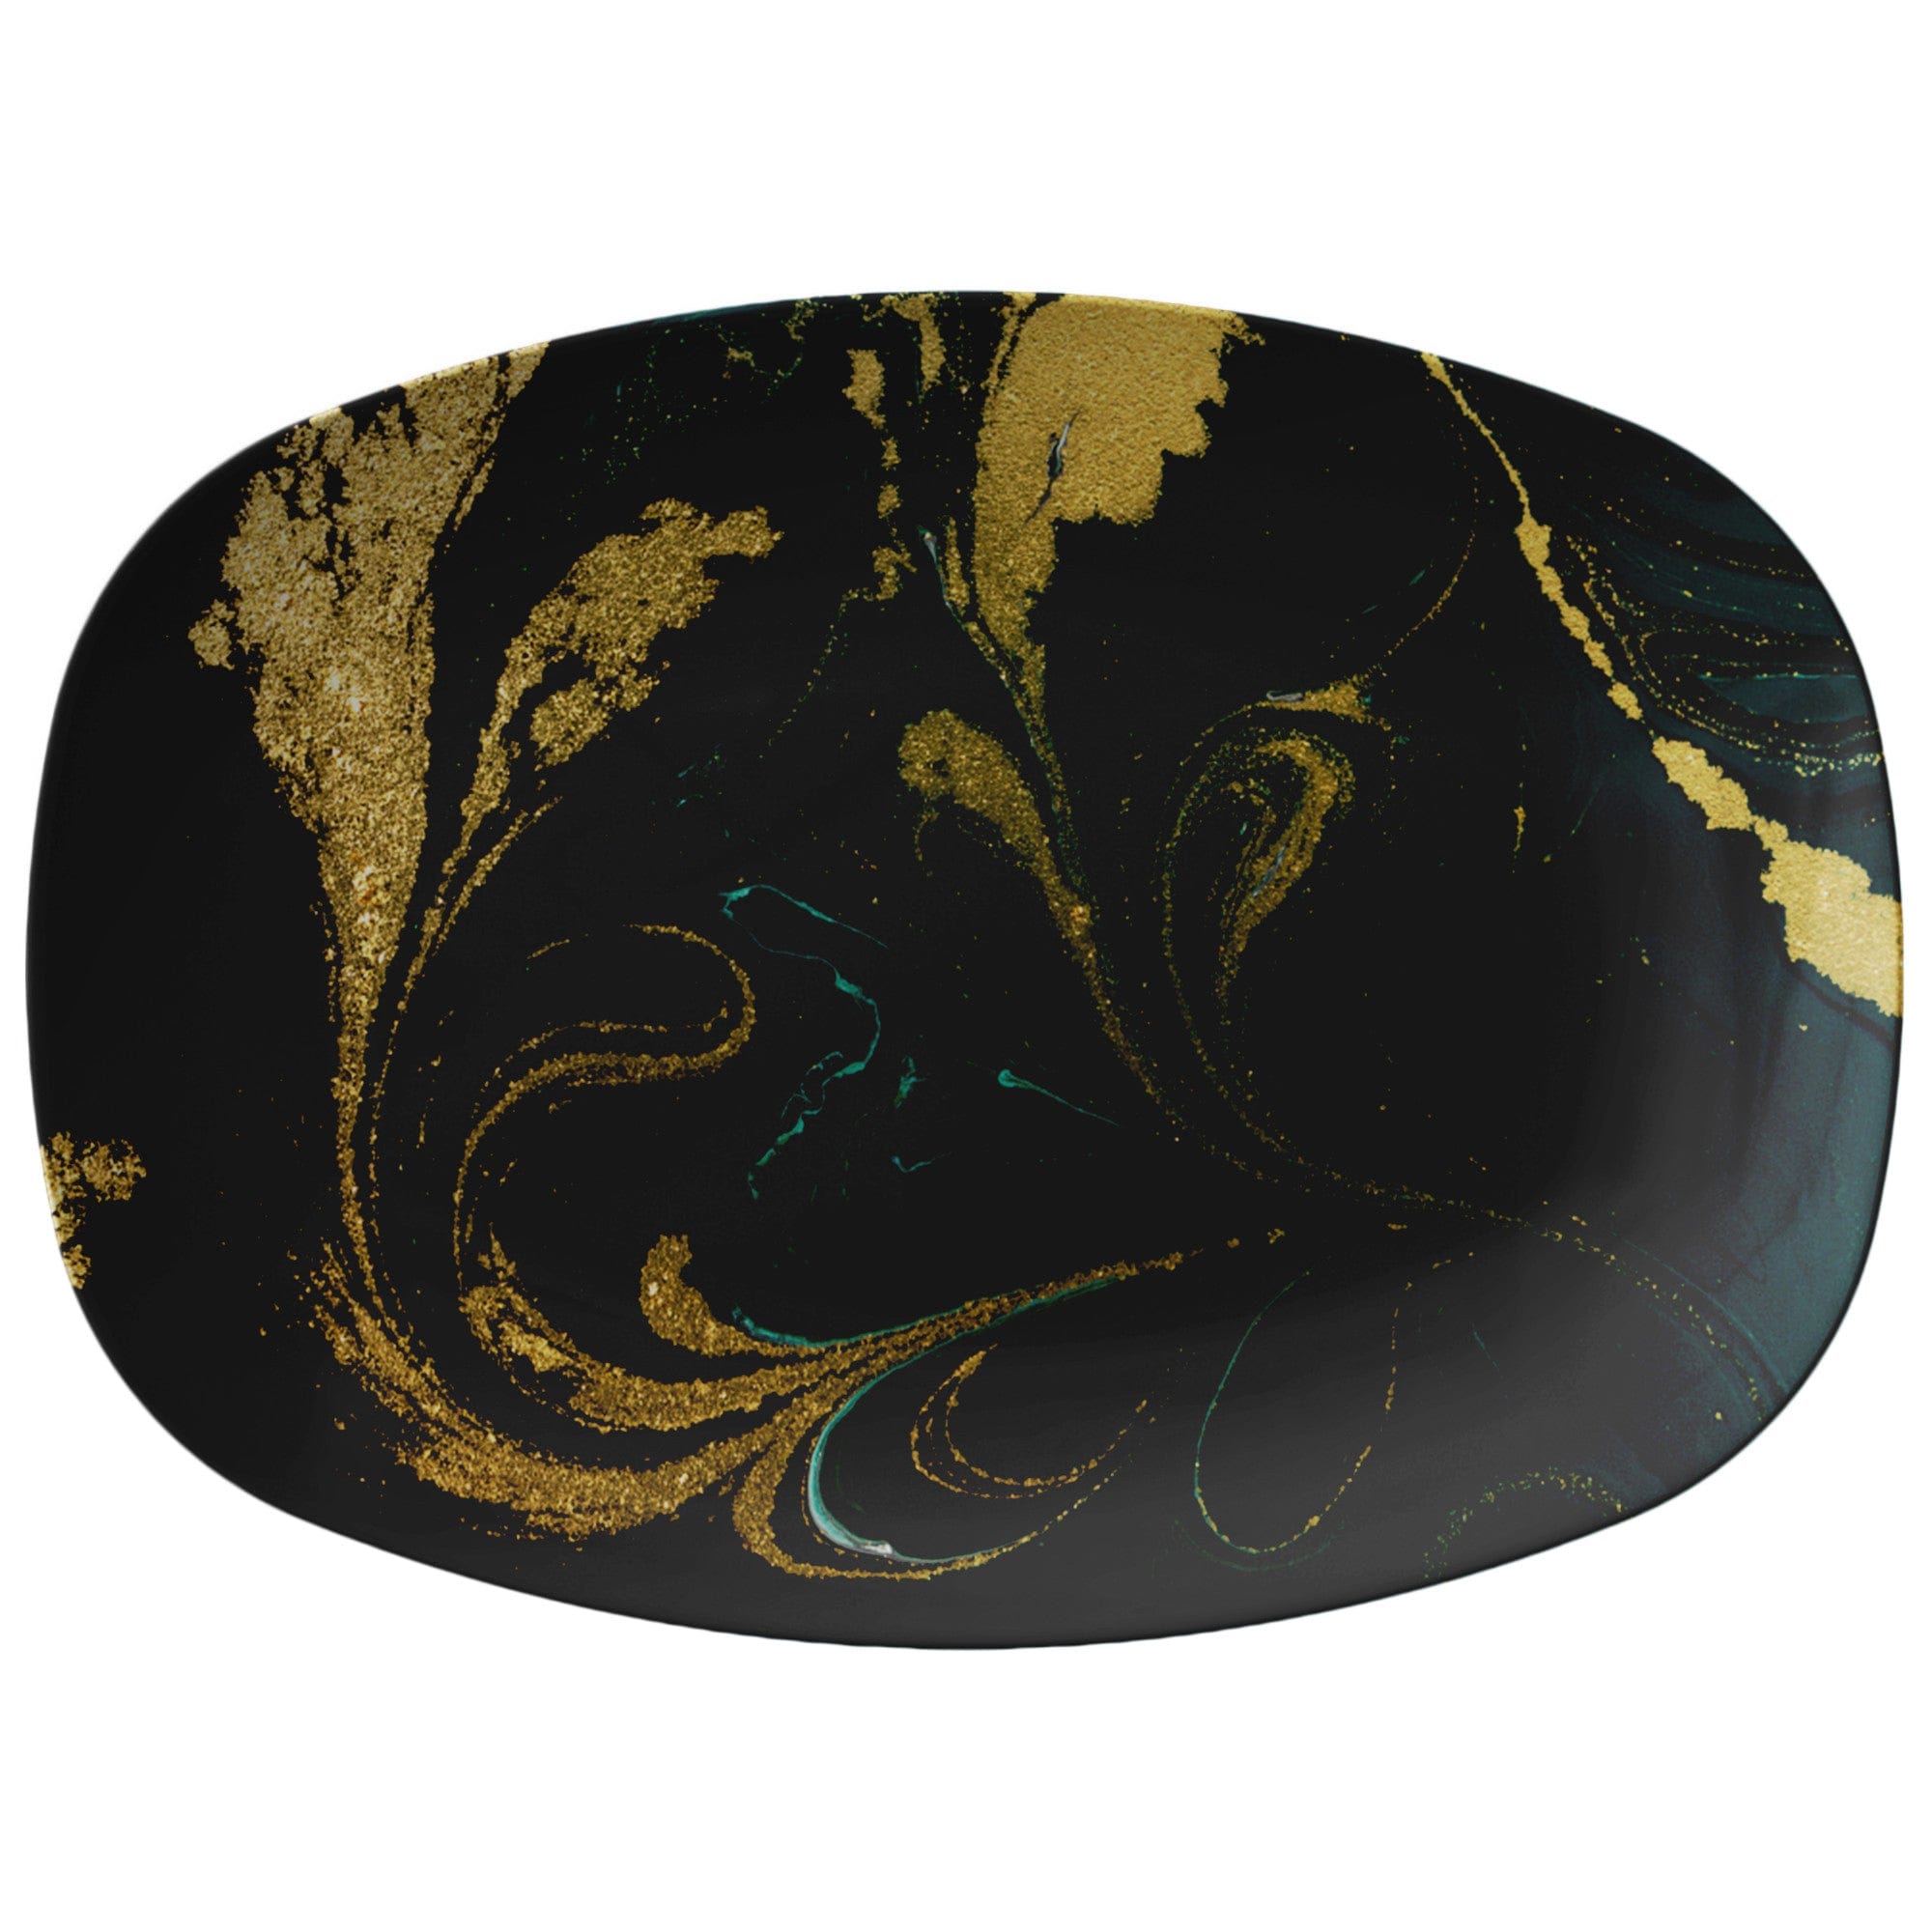 Kate McEnroe New York Green and Gold Marble PlatterServing PlattersP21 - GGL - MAR - 51